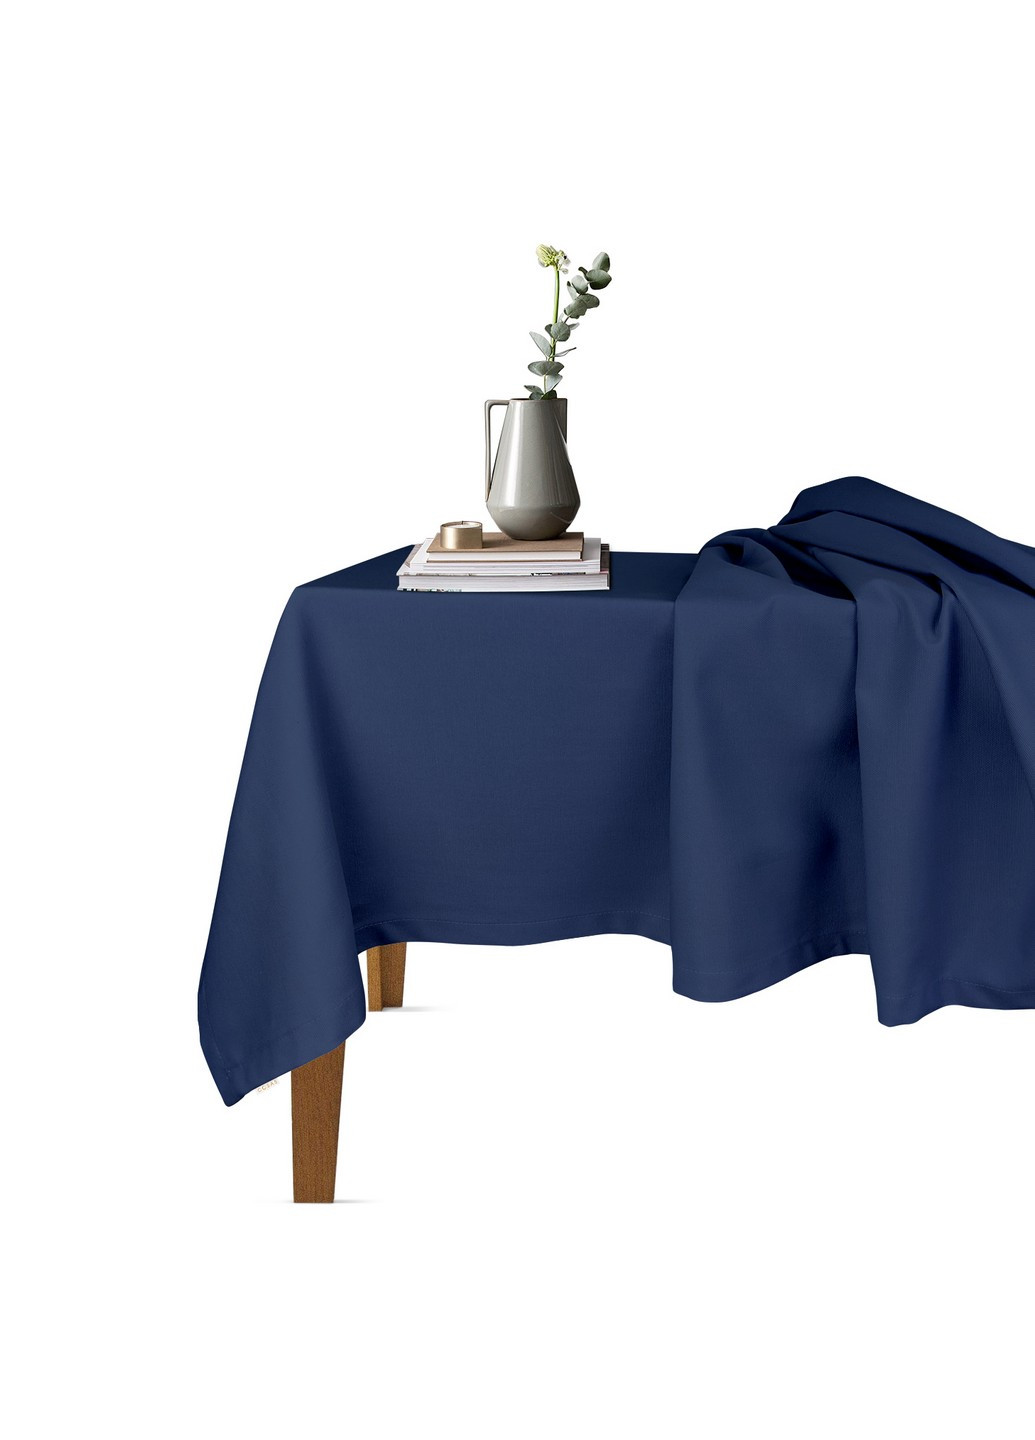 Столовый набор для сервировки стола скатерть DarkBlue 140х180 и салфетки тканевые White 35х35 - 4 шт (4822052073759) Cosas (252506552)